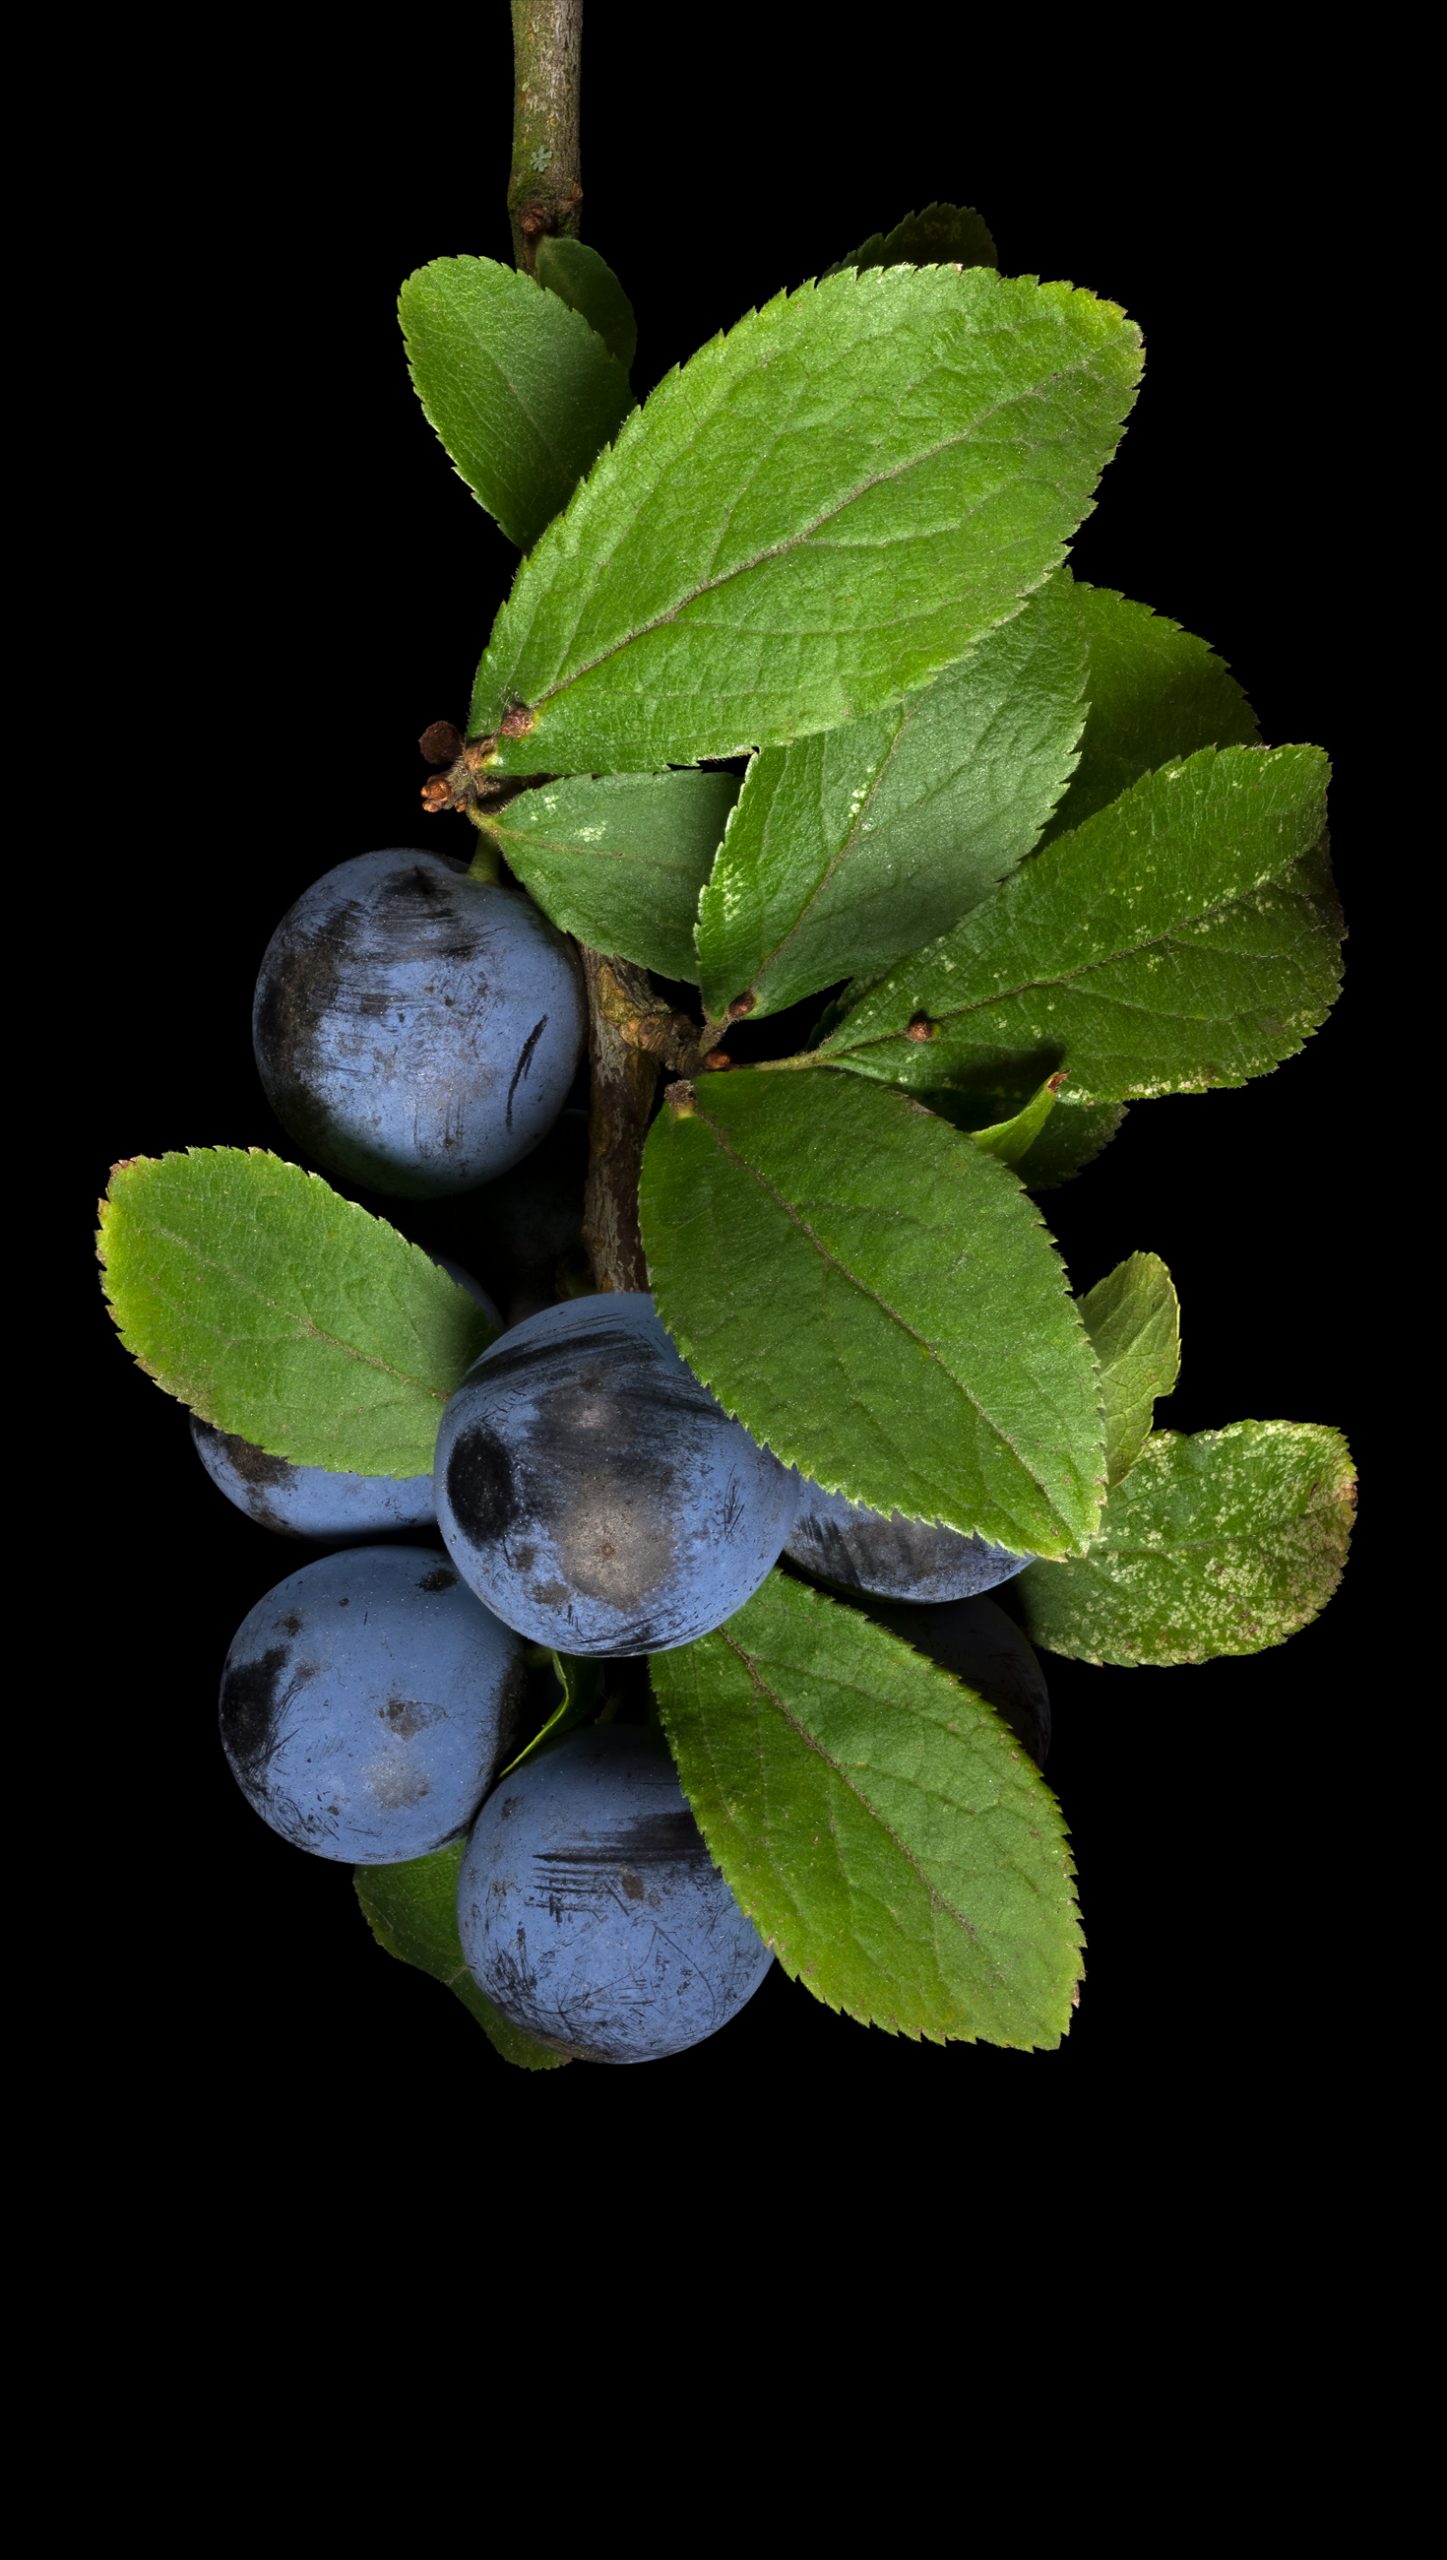 Blackthorn: Prunus spinosa